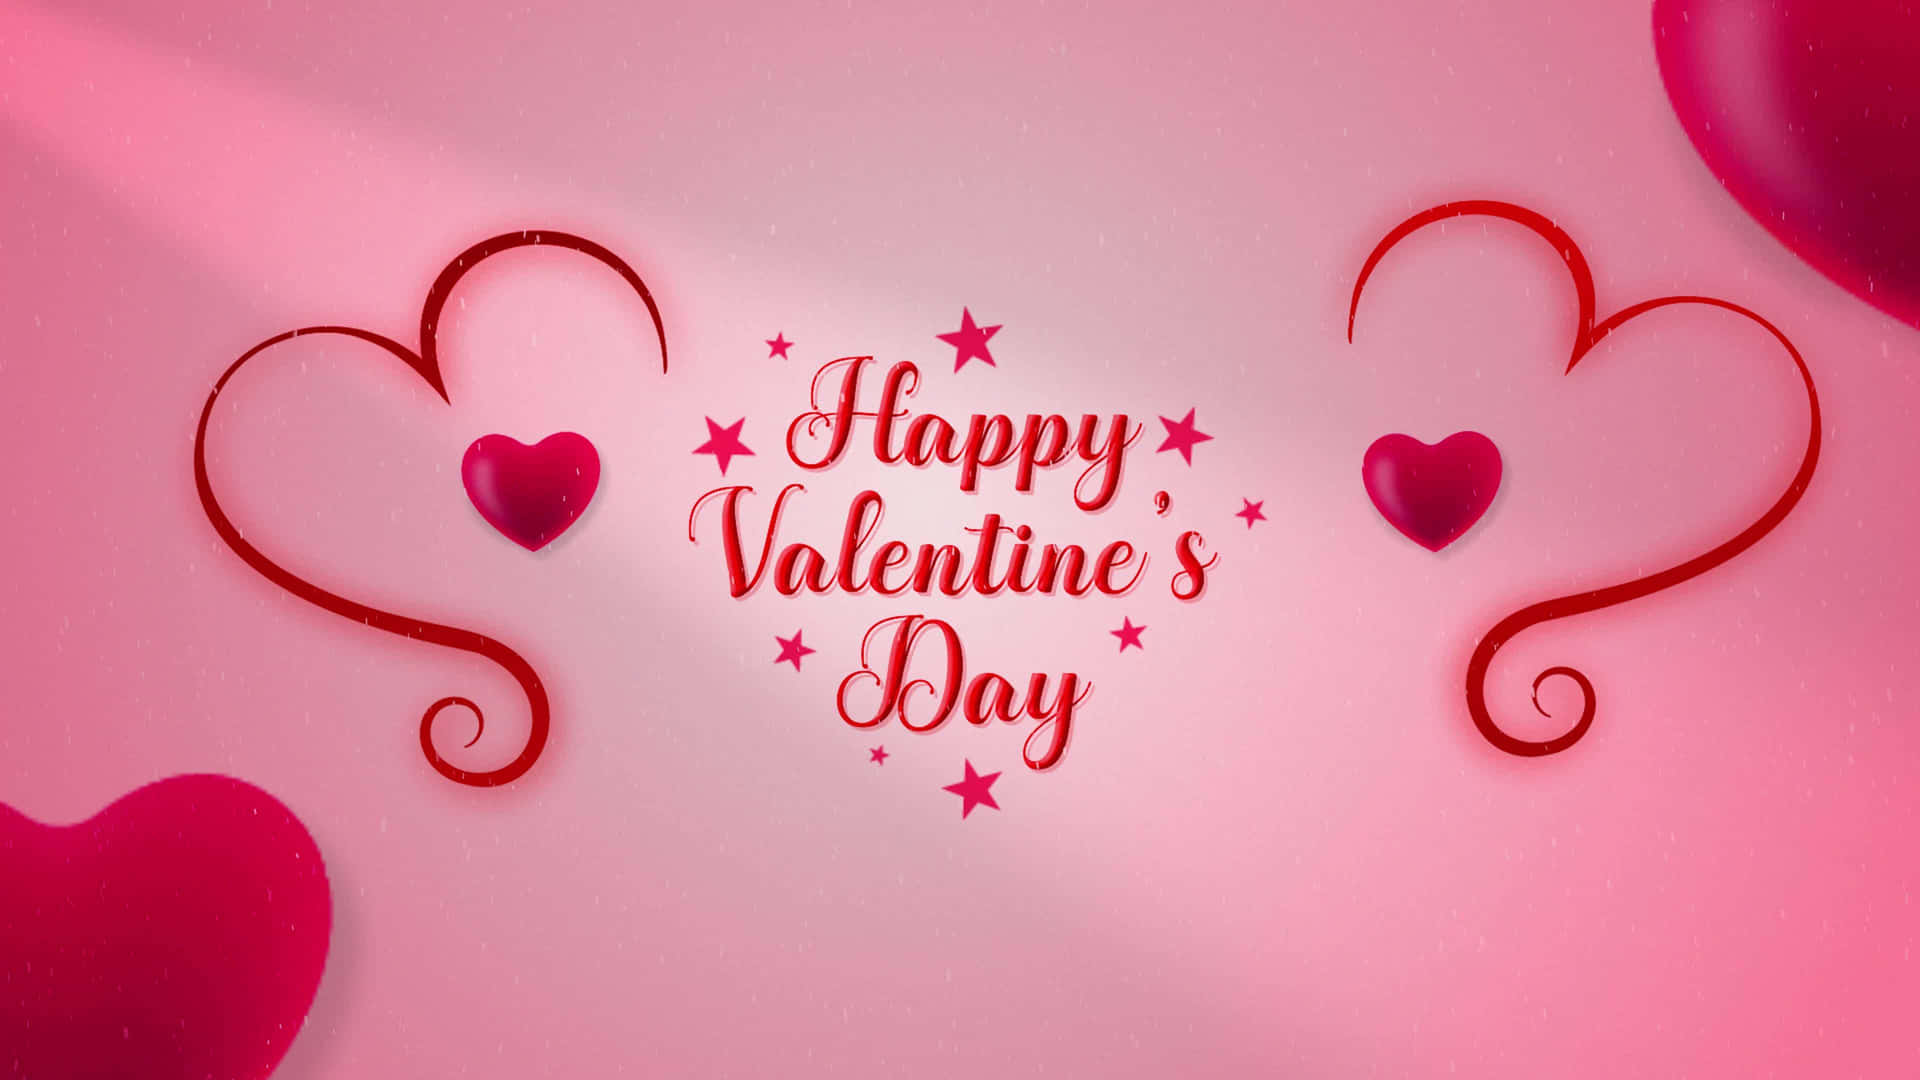 Fondode Pantalla Romántico De Corazones Para El Día De San Valentín.